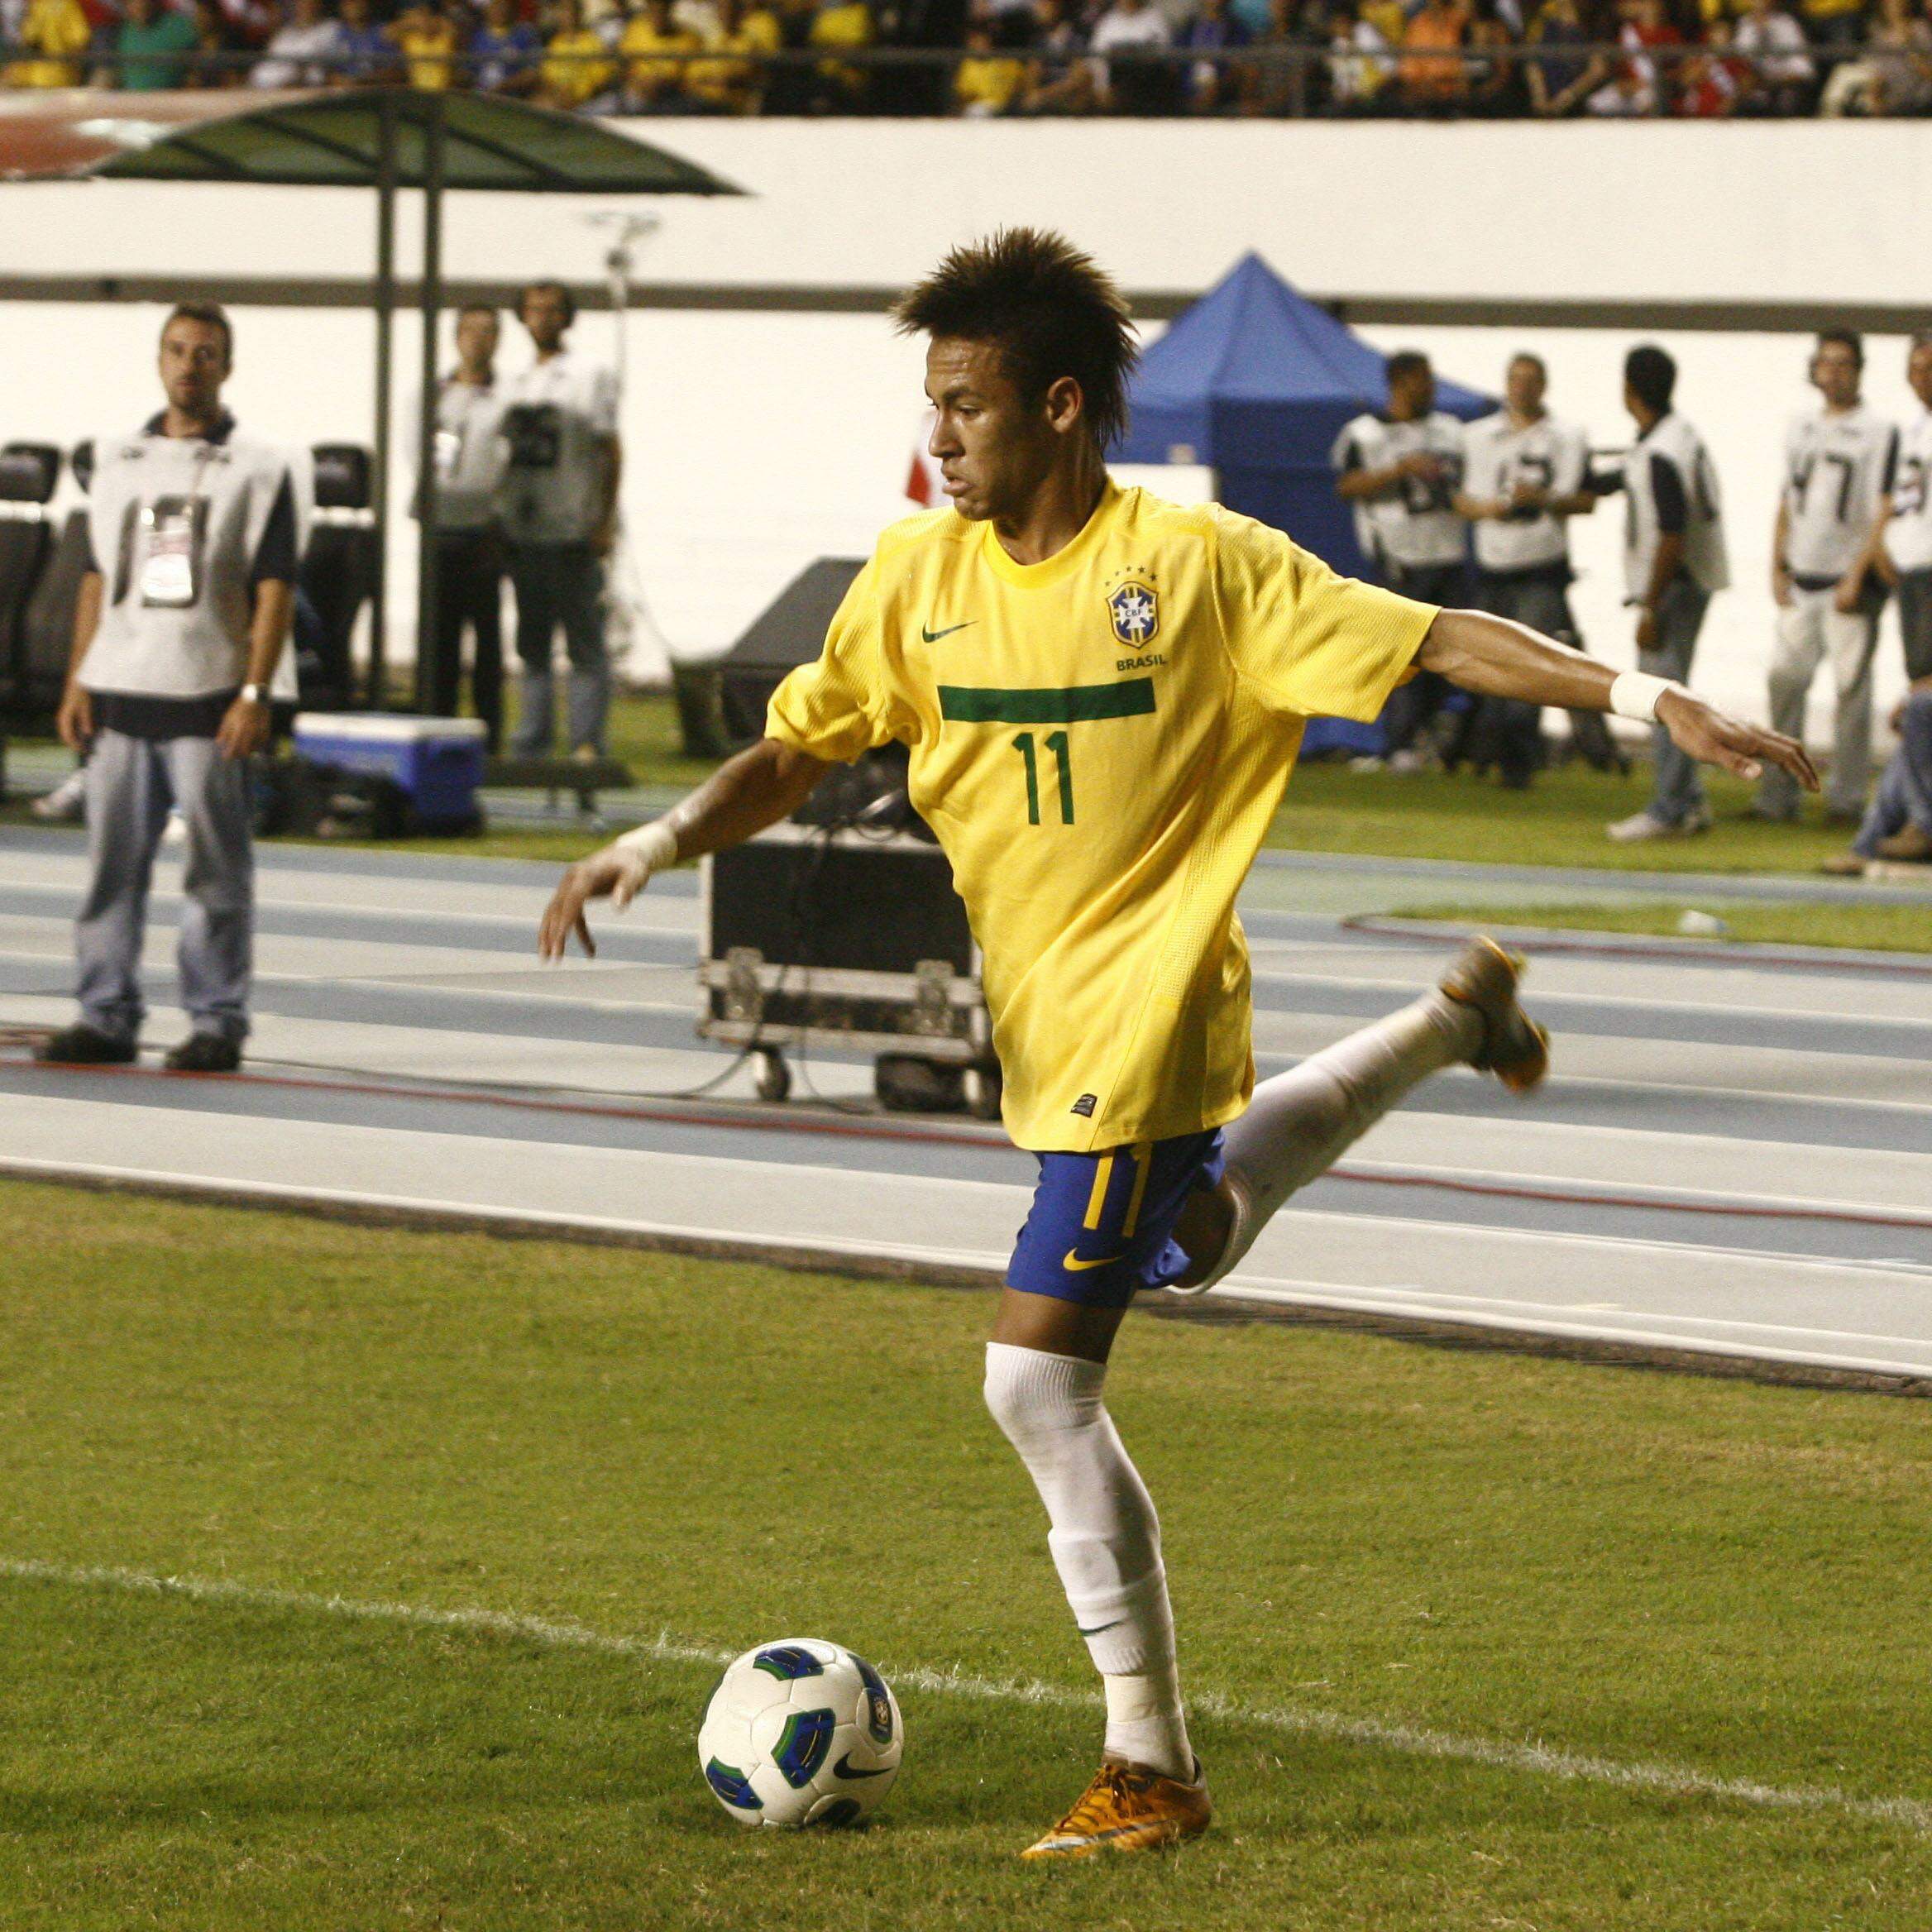 Neymar joga hoje no Al-Hilal x Al-Fayha? Onde assistir de graça